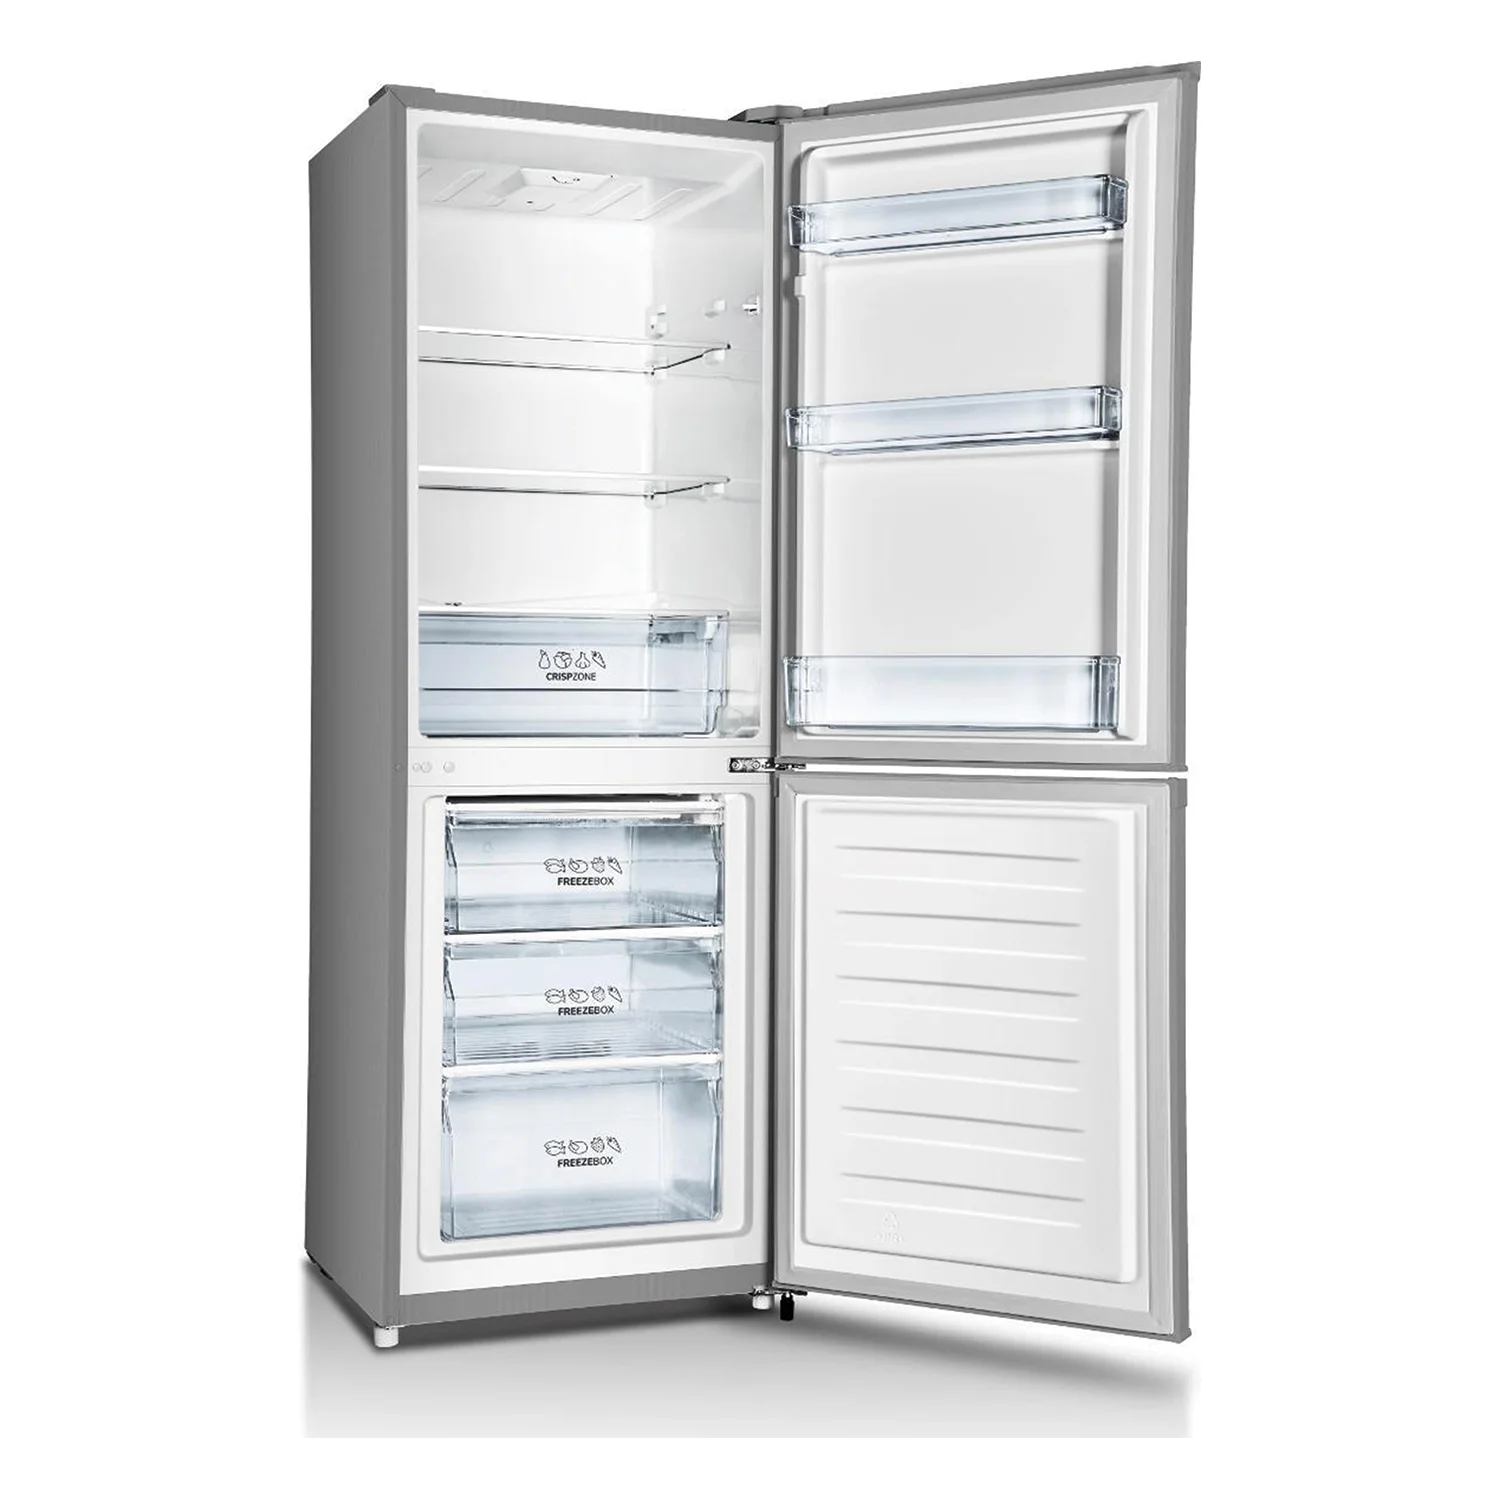 Kombinovani frižider visine 160 cm.